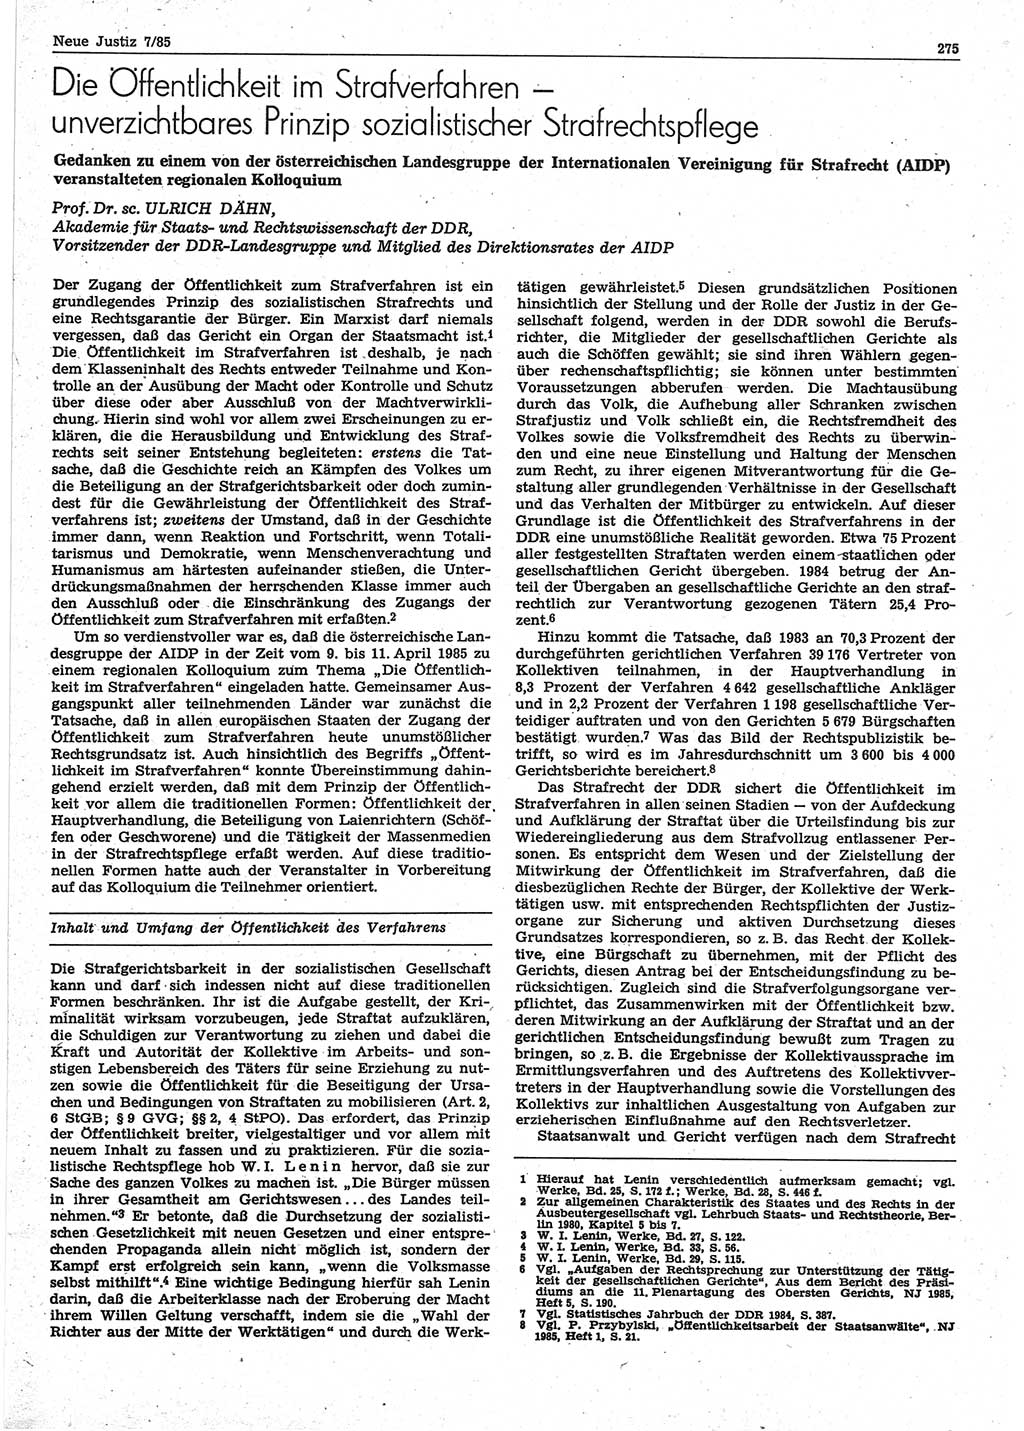 Neue Justiz (NJ), Zeitschrift für sozialistisches Recht und Gesetzlichkeit [Deutsche Demokratische Republik (DDR)], 39. Jahrgang 1985, Seite 275 (NJ DDR 1985, S. 275)